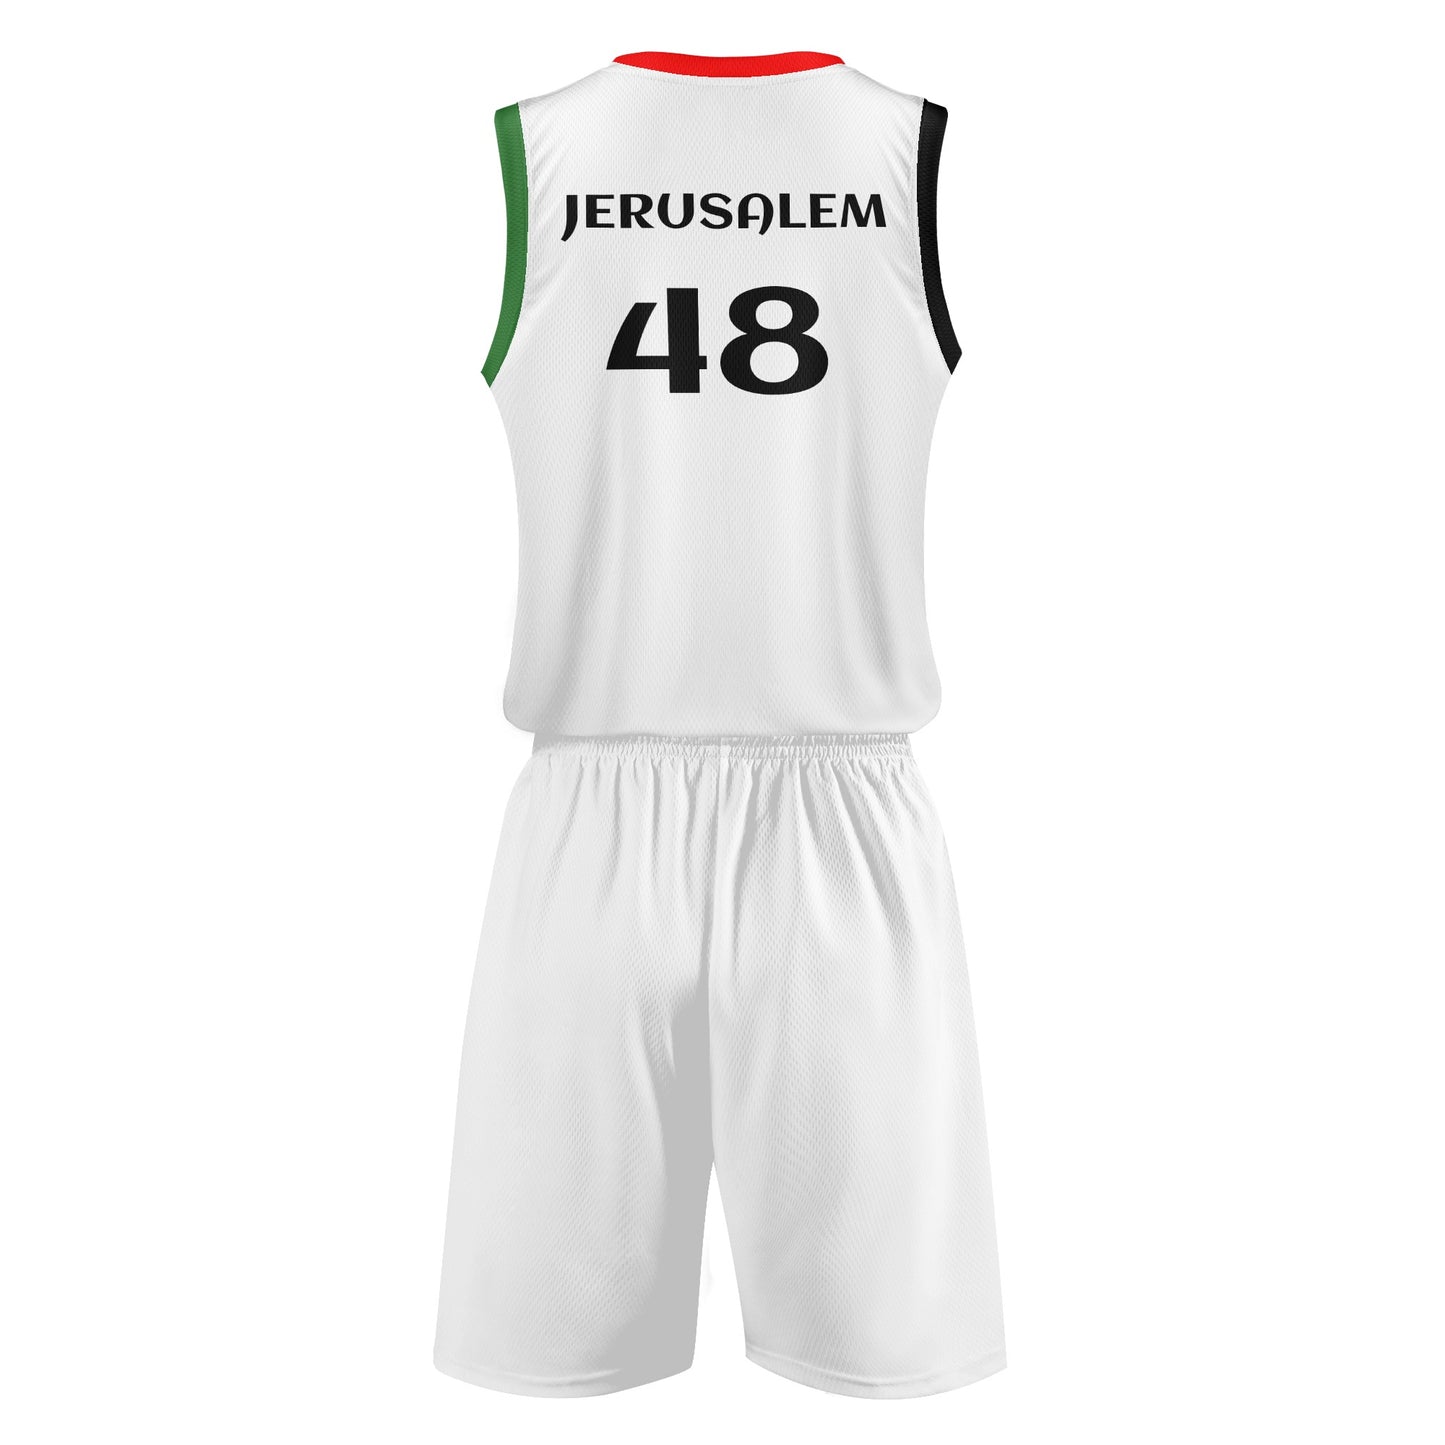 Palestinian Basketball Sports Uniform